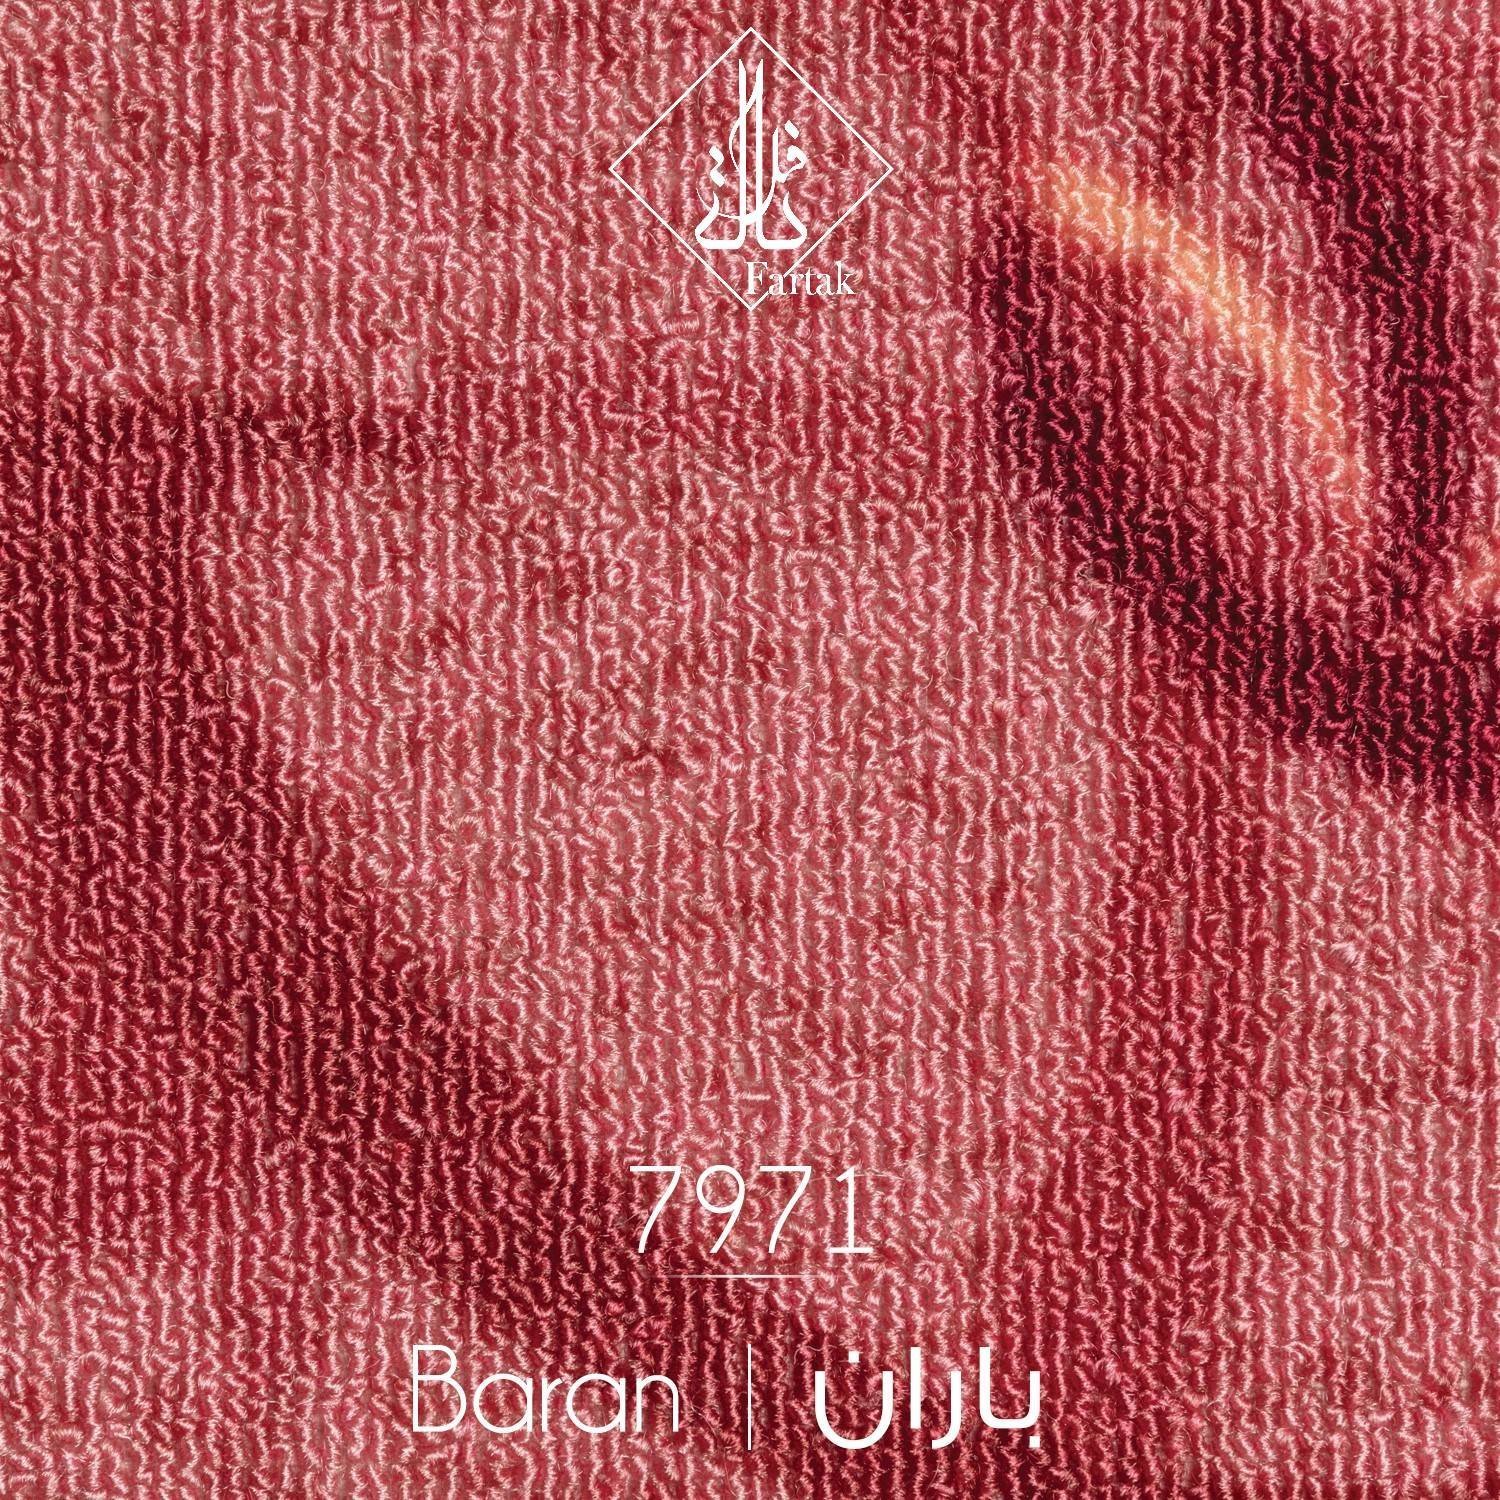 موکت ظریف مصور طرح باران کد ۷۹71